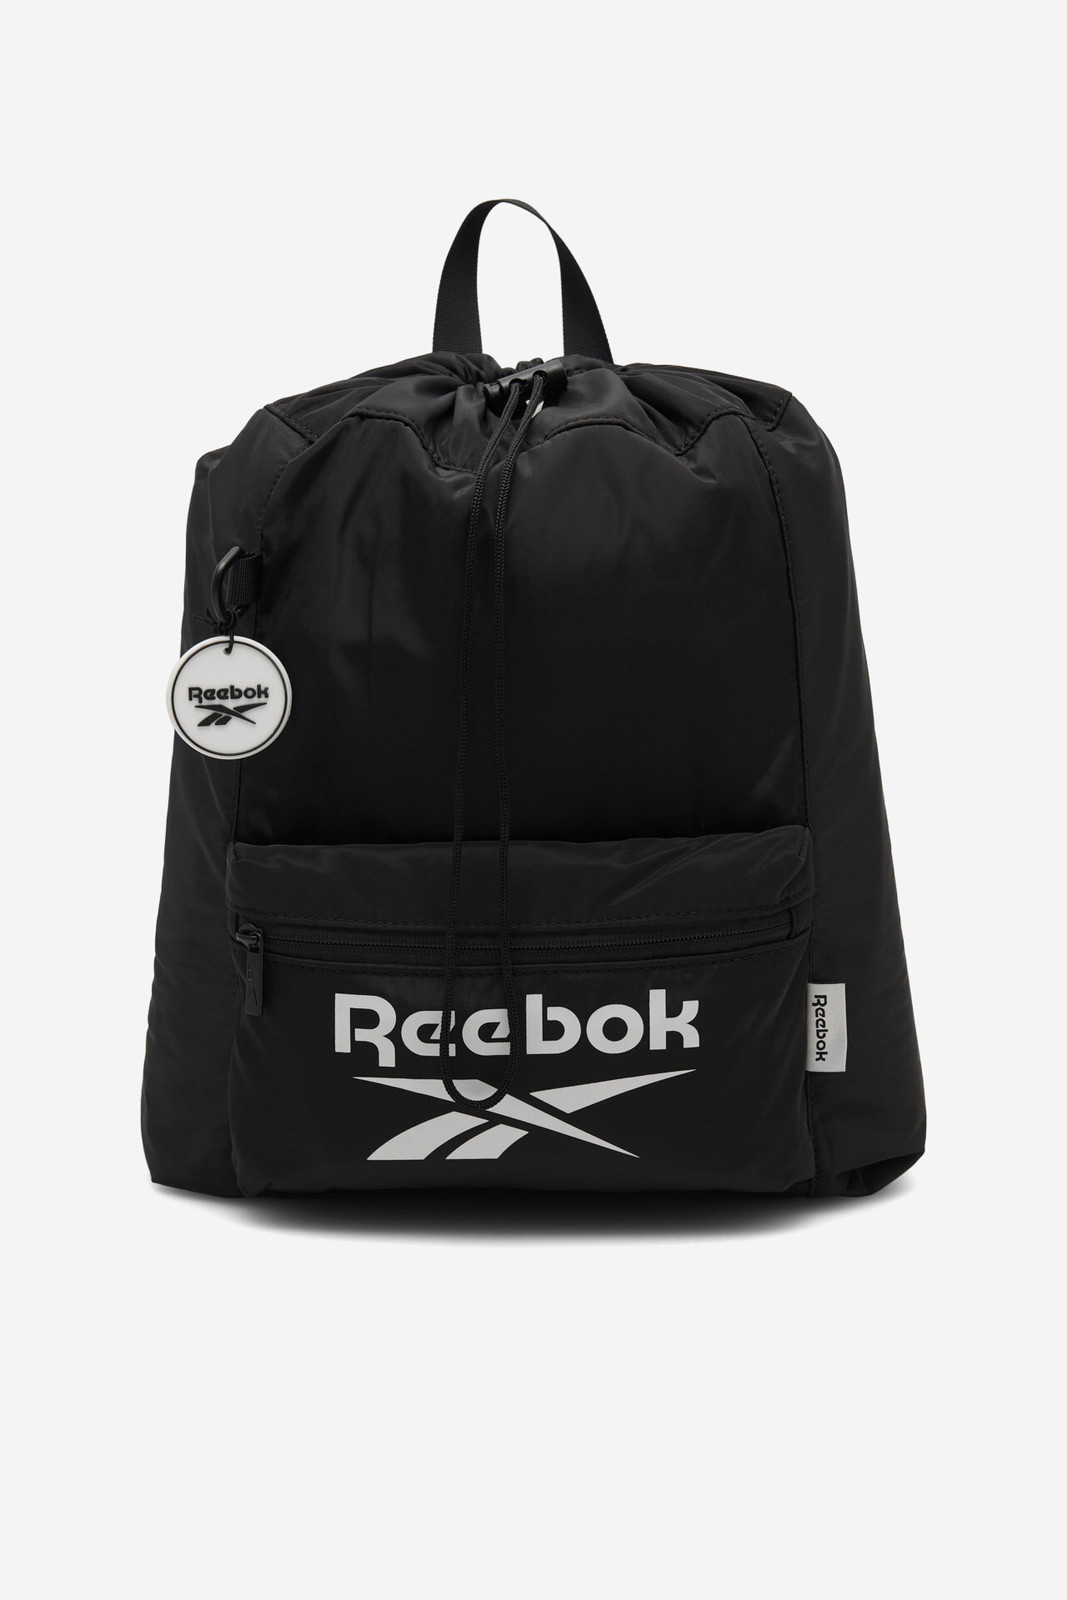 Batohy a tašky Reebok RBK-021-CCC-05